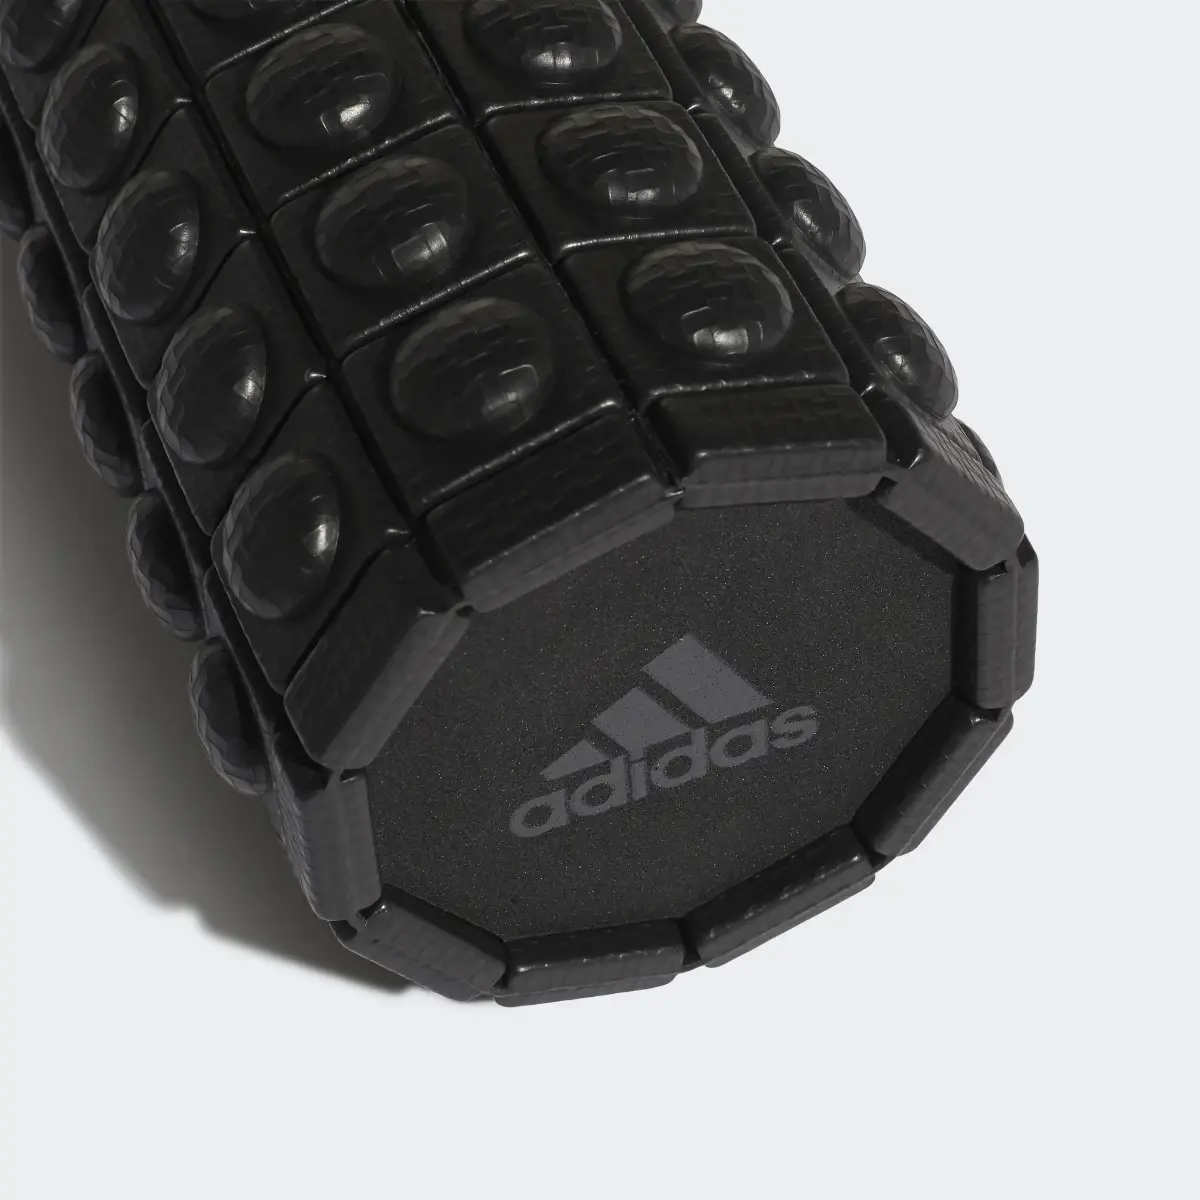 Adidas Textured Foam Roller. 3